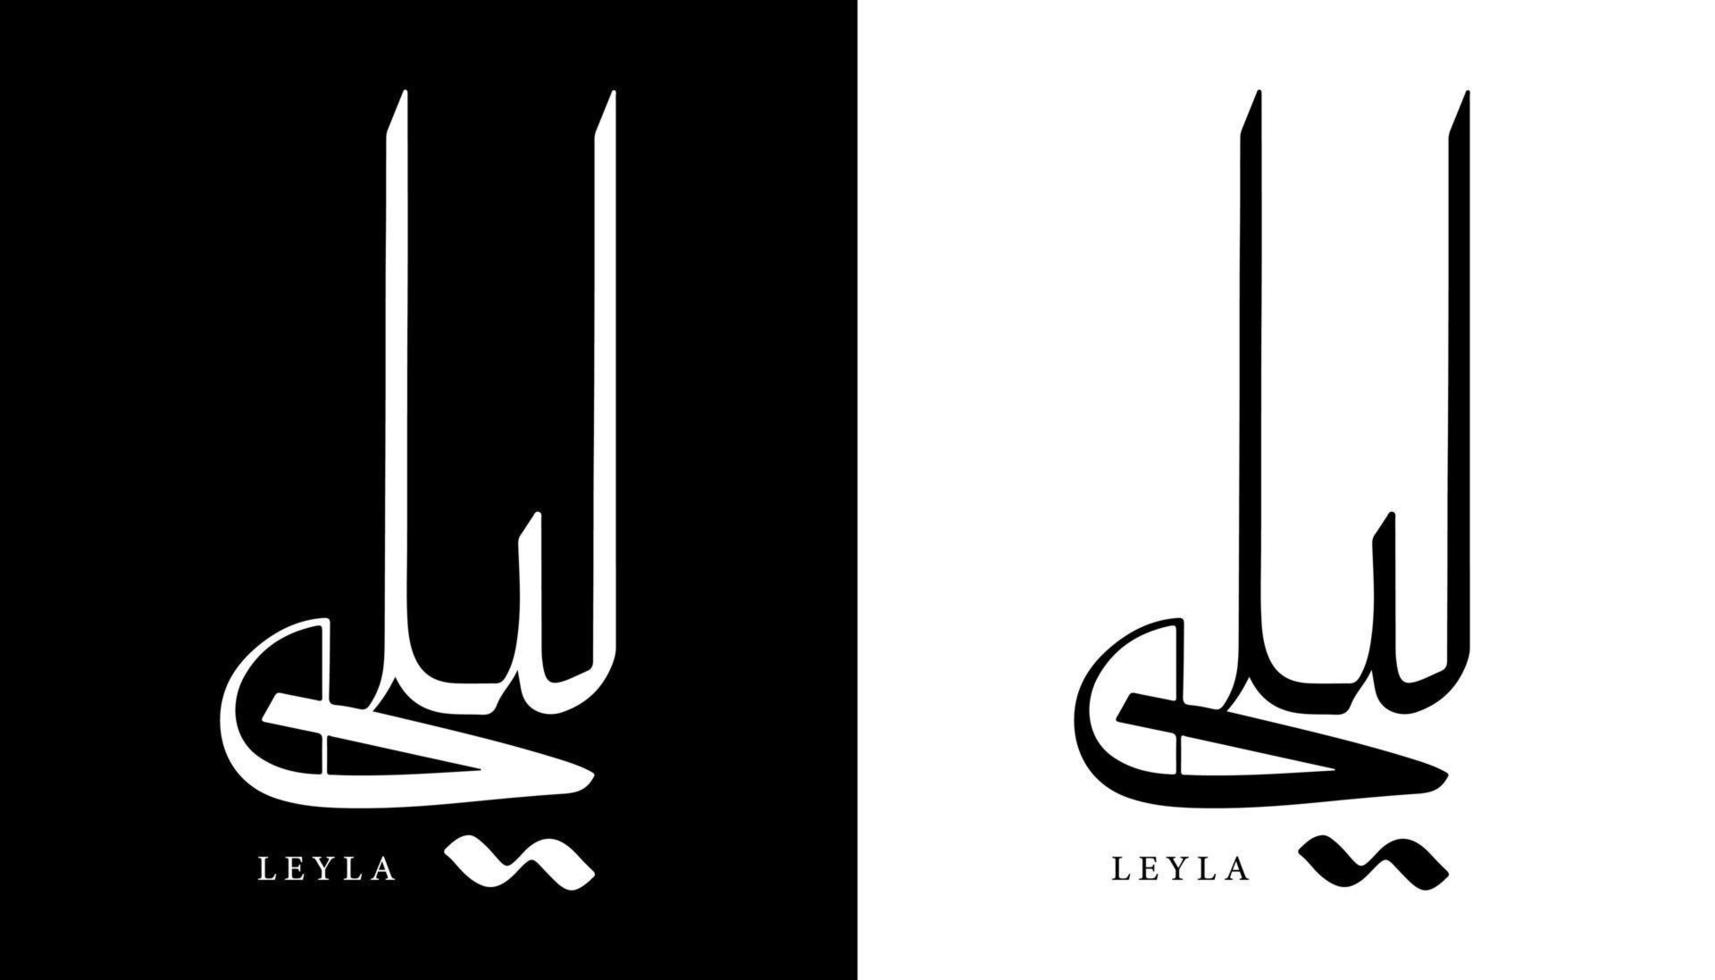 calligraphie arabe nom traduit 'leyla' lettres arabes alphabet police lettrage logo islamique illustration vectorielle vecteur